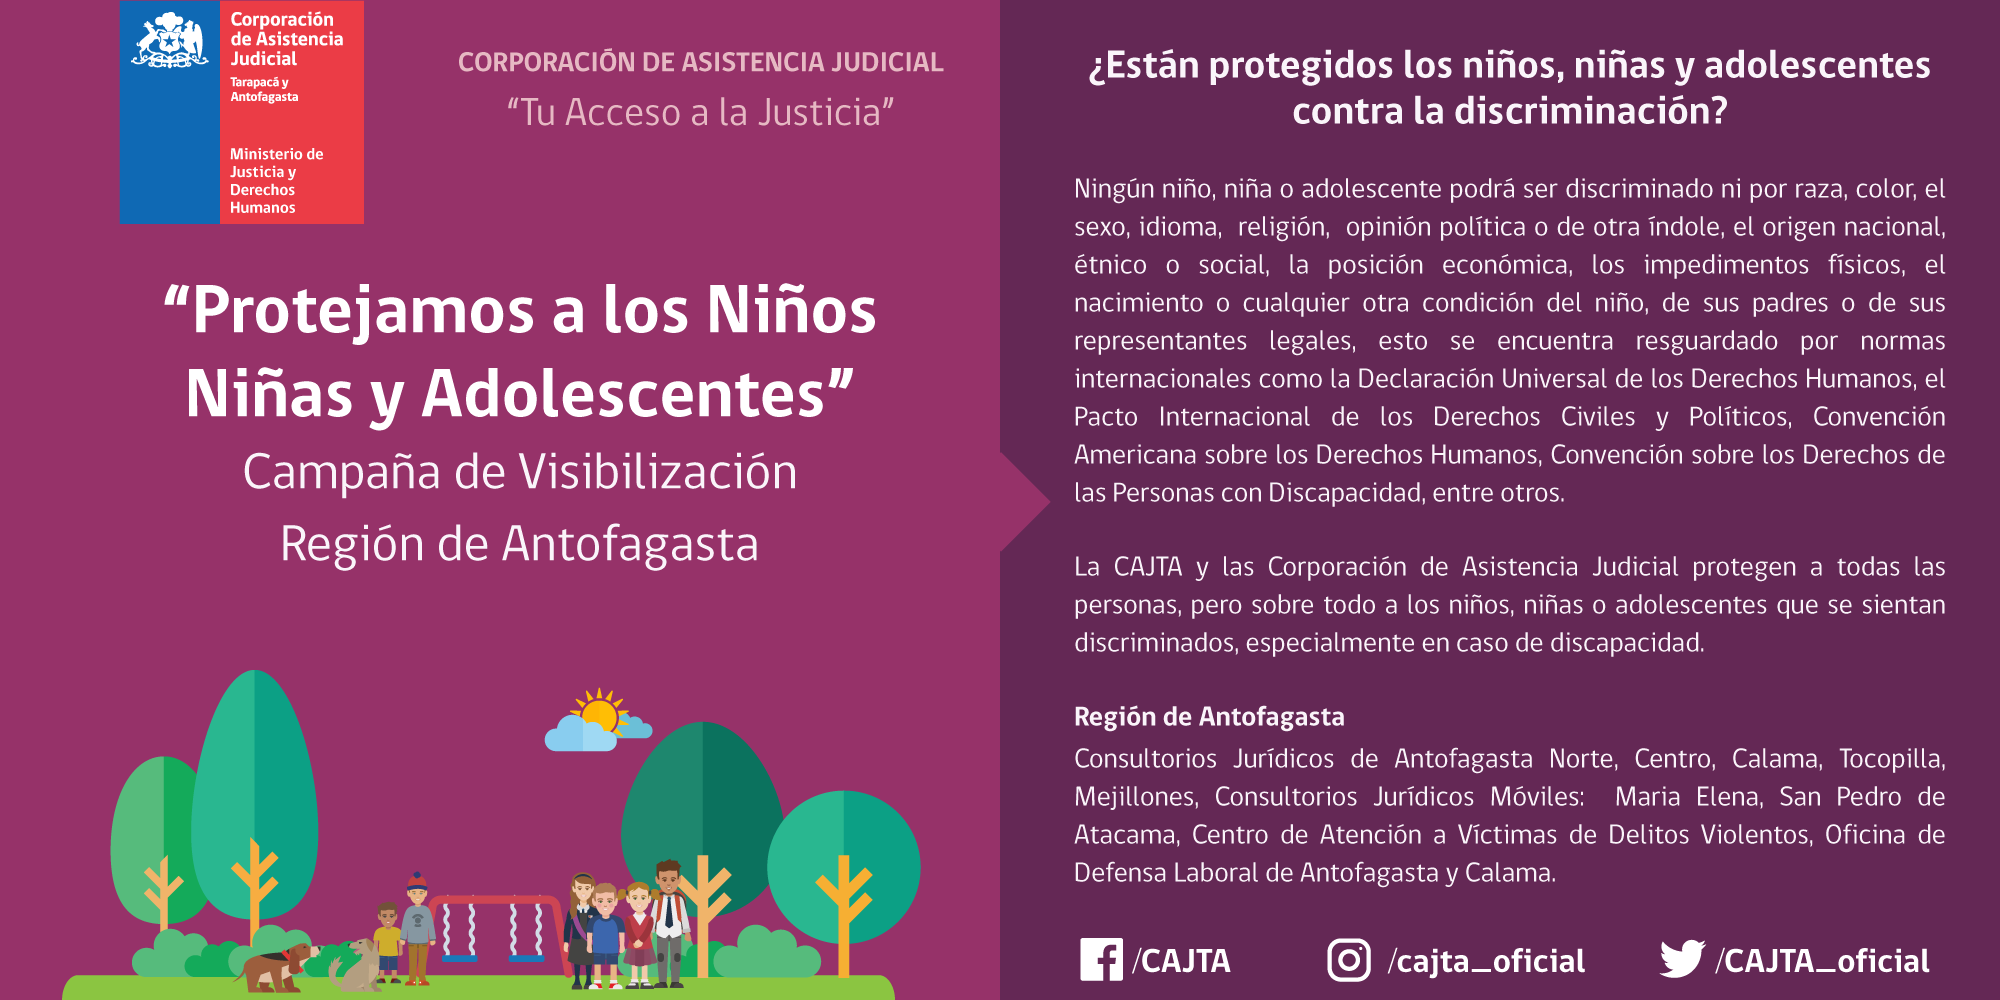 Campaña de Visibilización: Región de Antofagasta